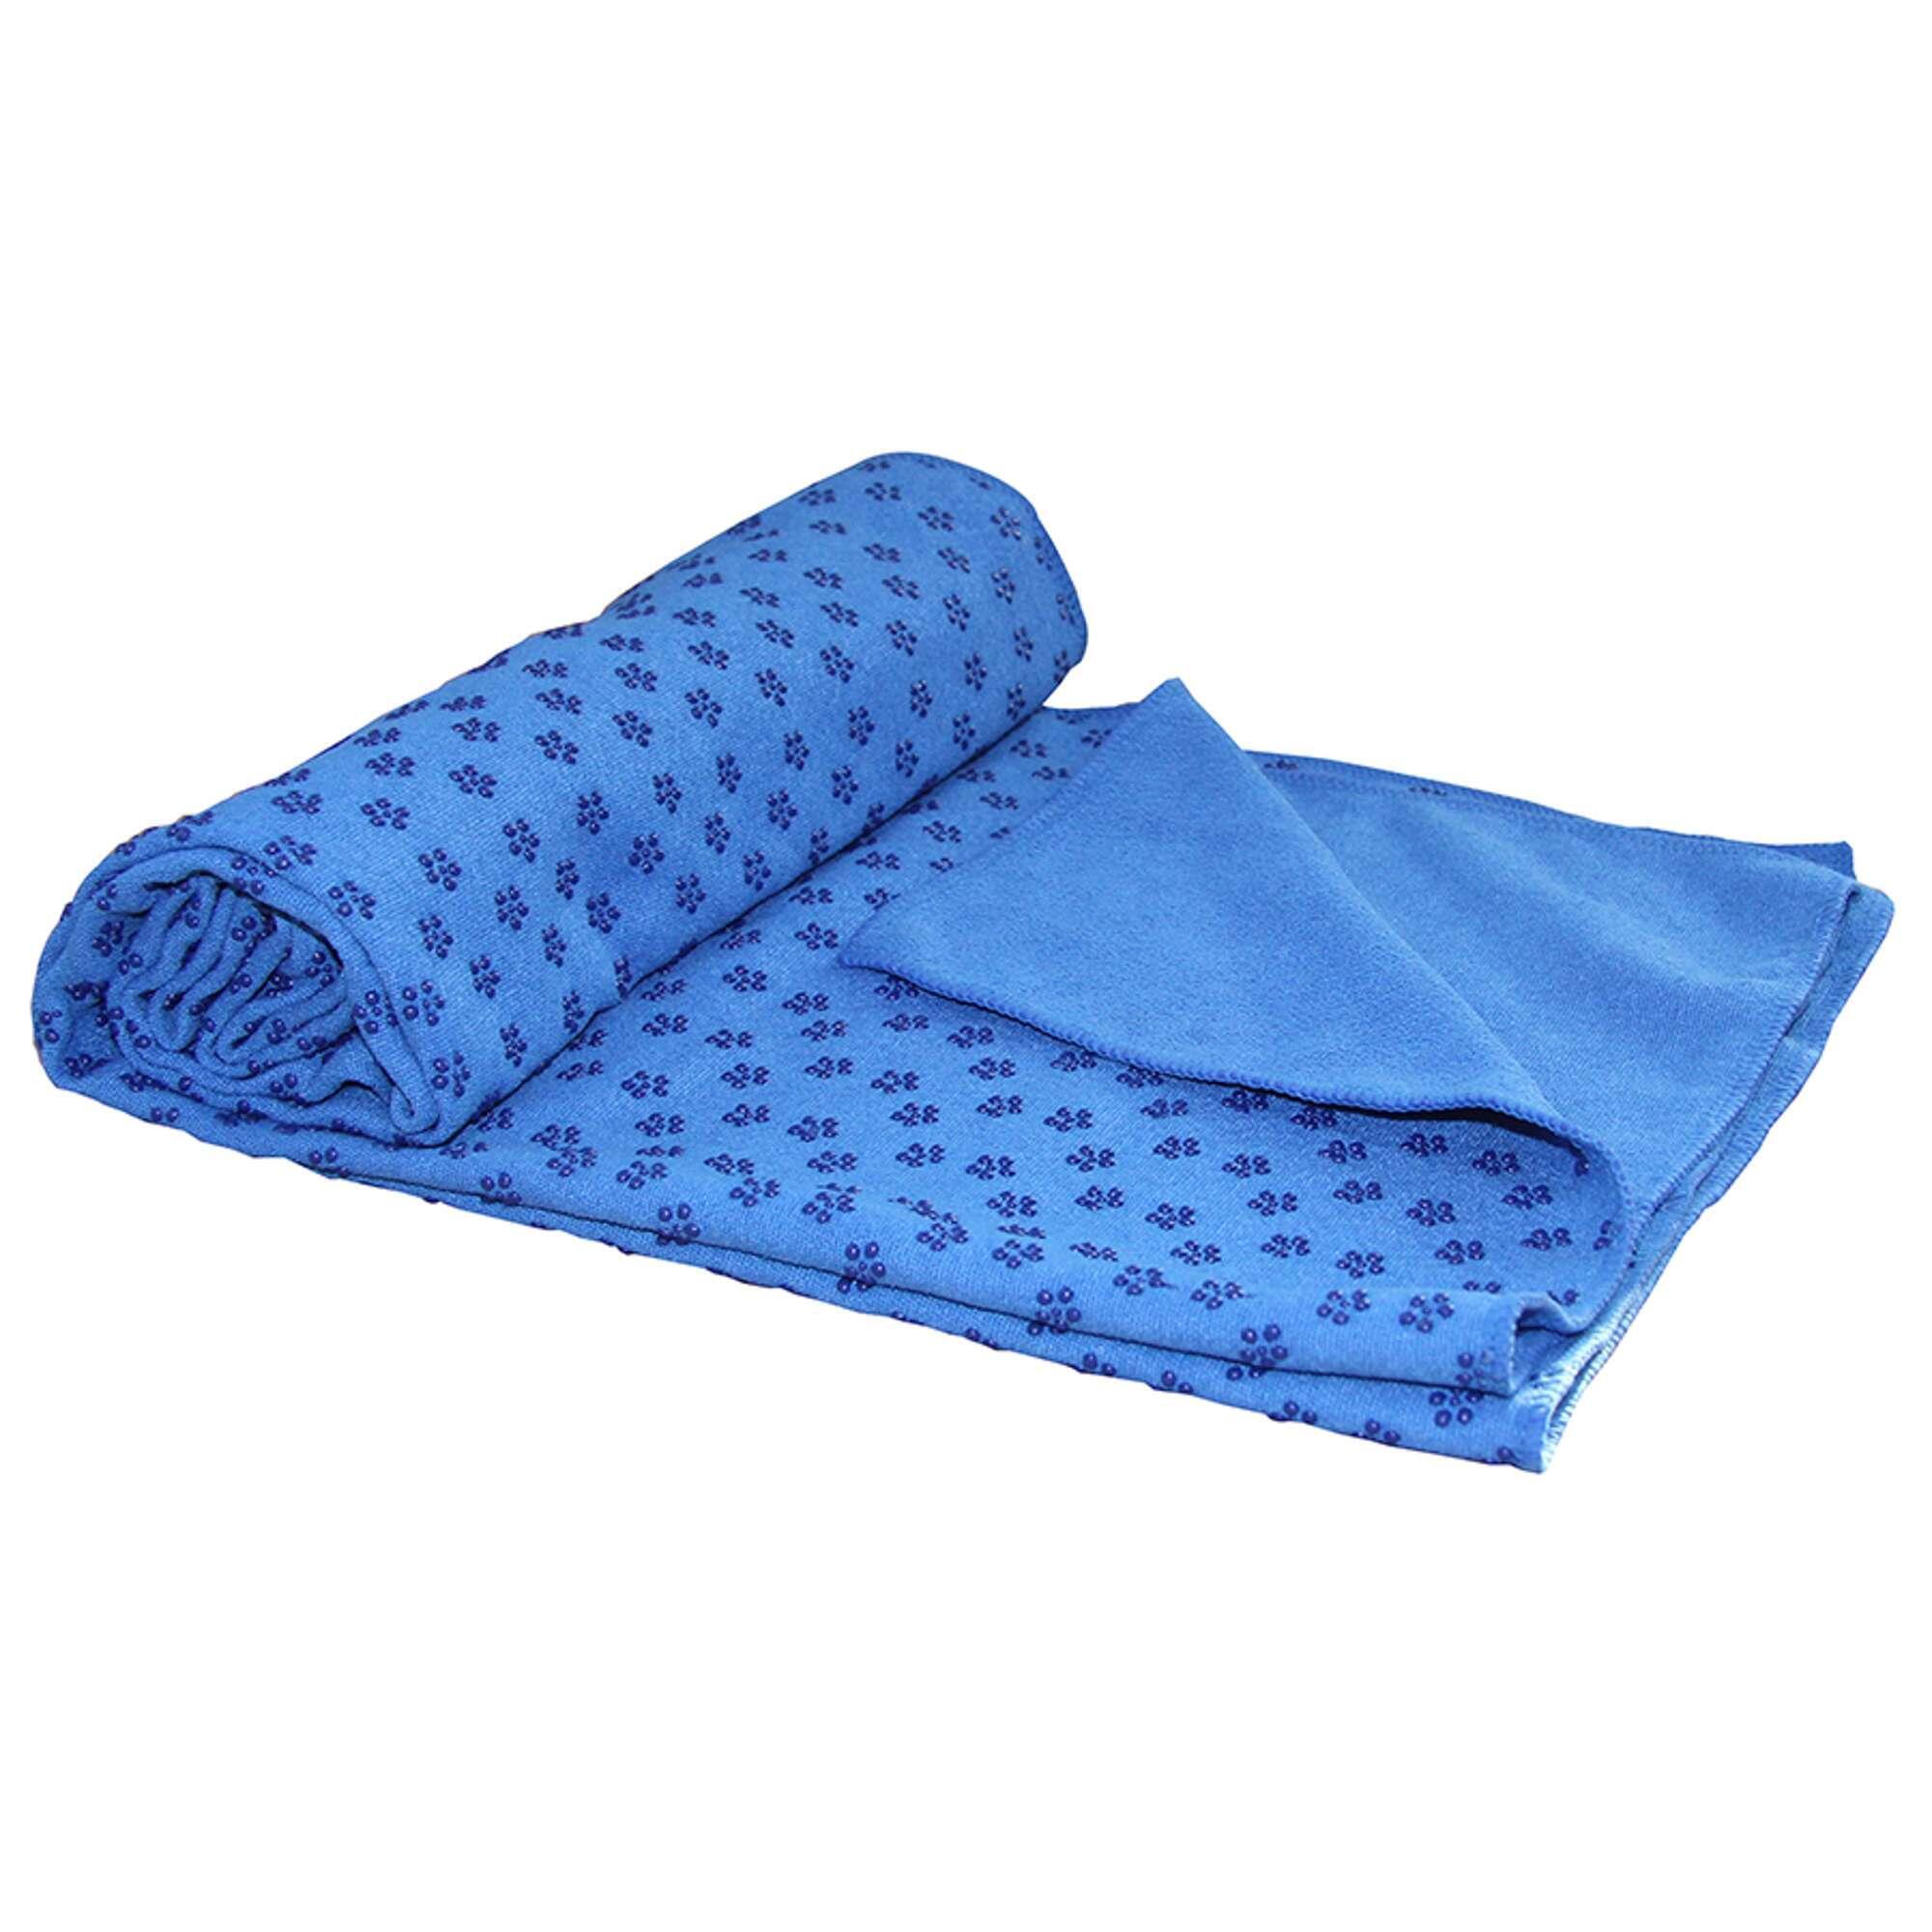 Полотенце для йоги FLOW Towel S, Moonlight Blue (NO SWEAT Yoga Towel) BODHI, лунно-голубой полотенце для йоги 180 63 см tunturi yoga towel с мешком для переноски синее